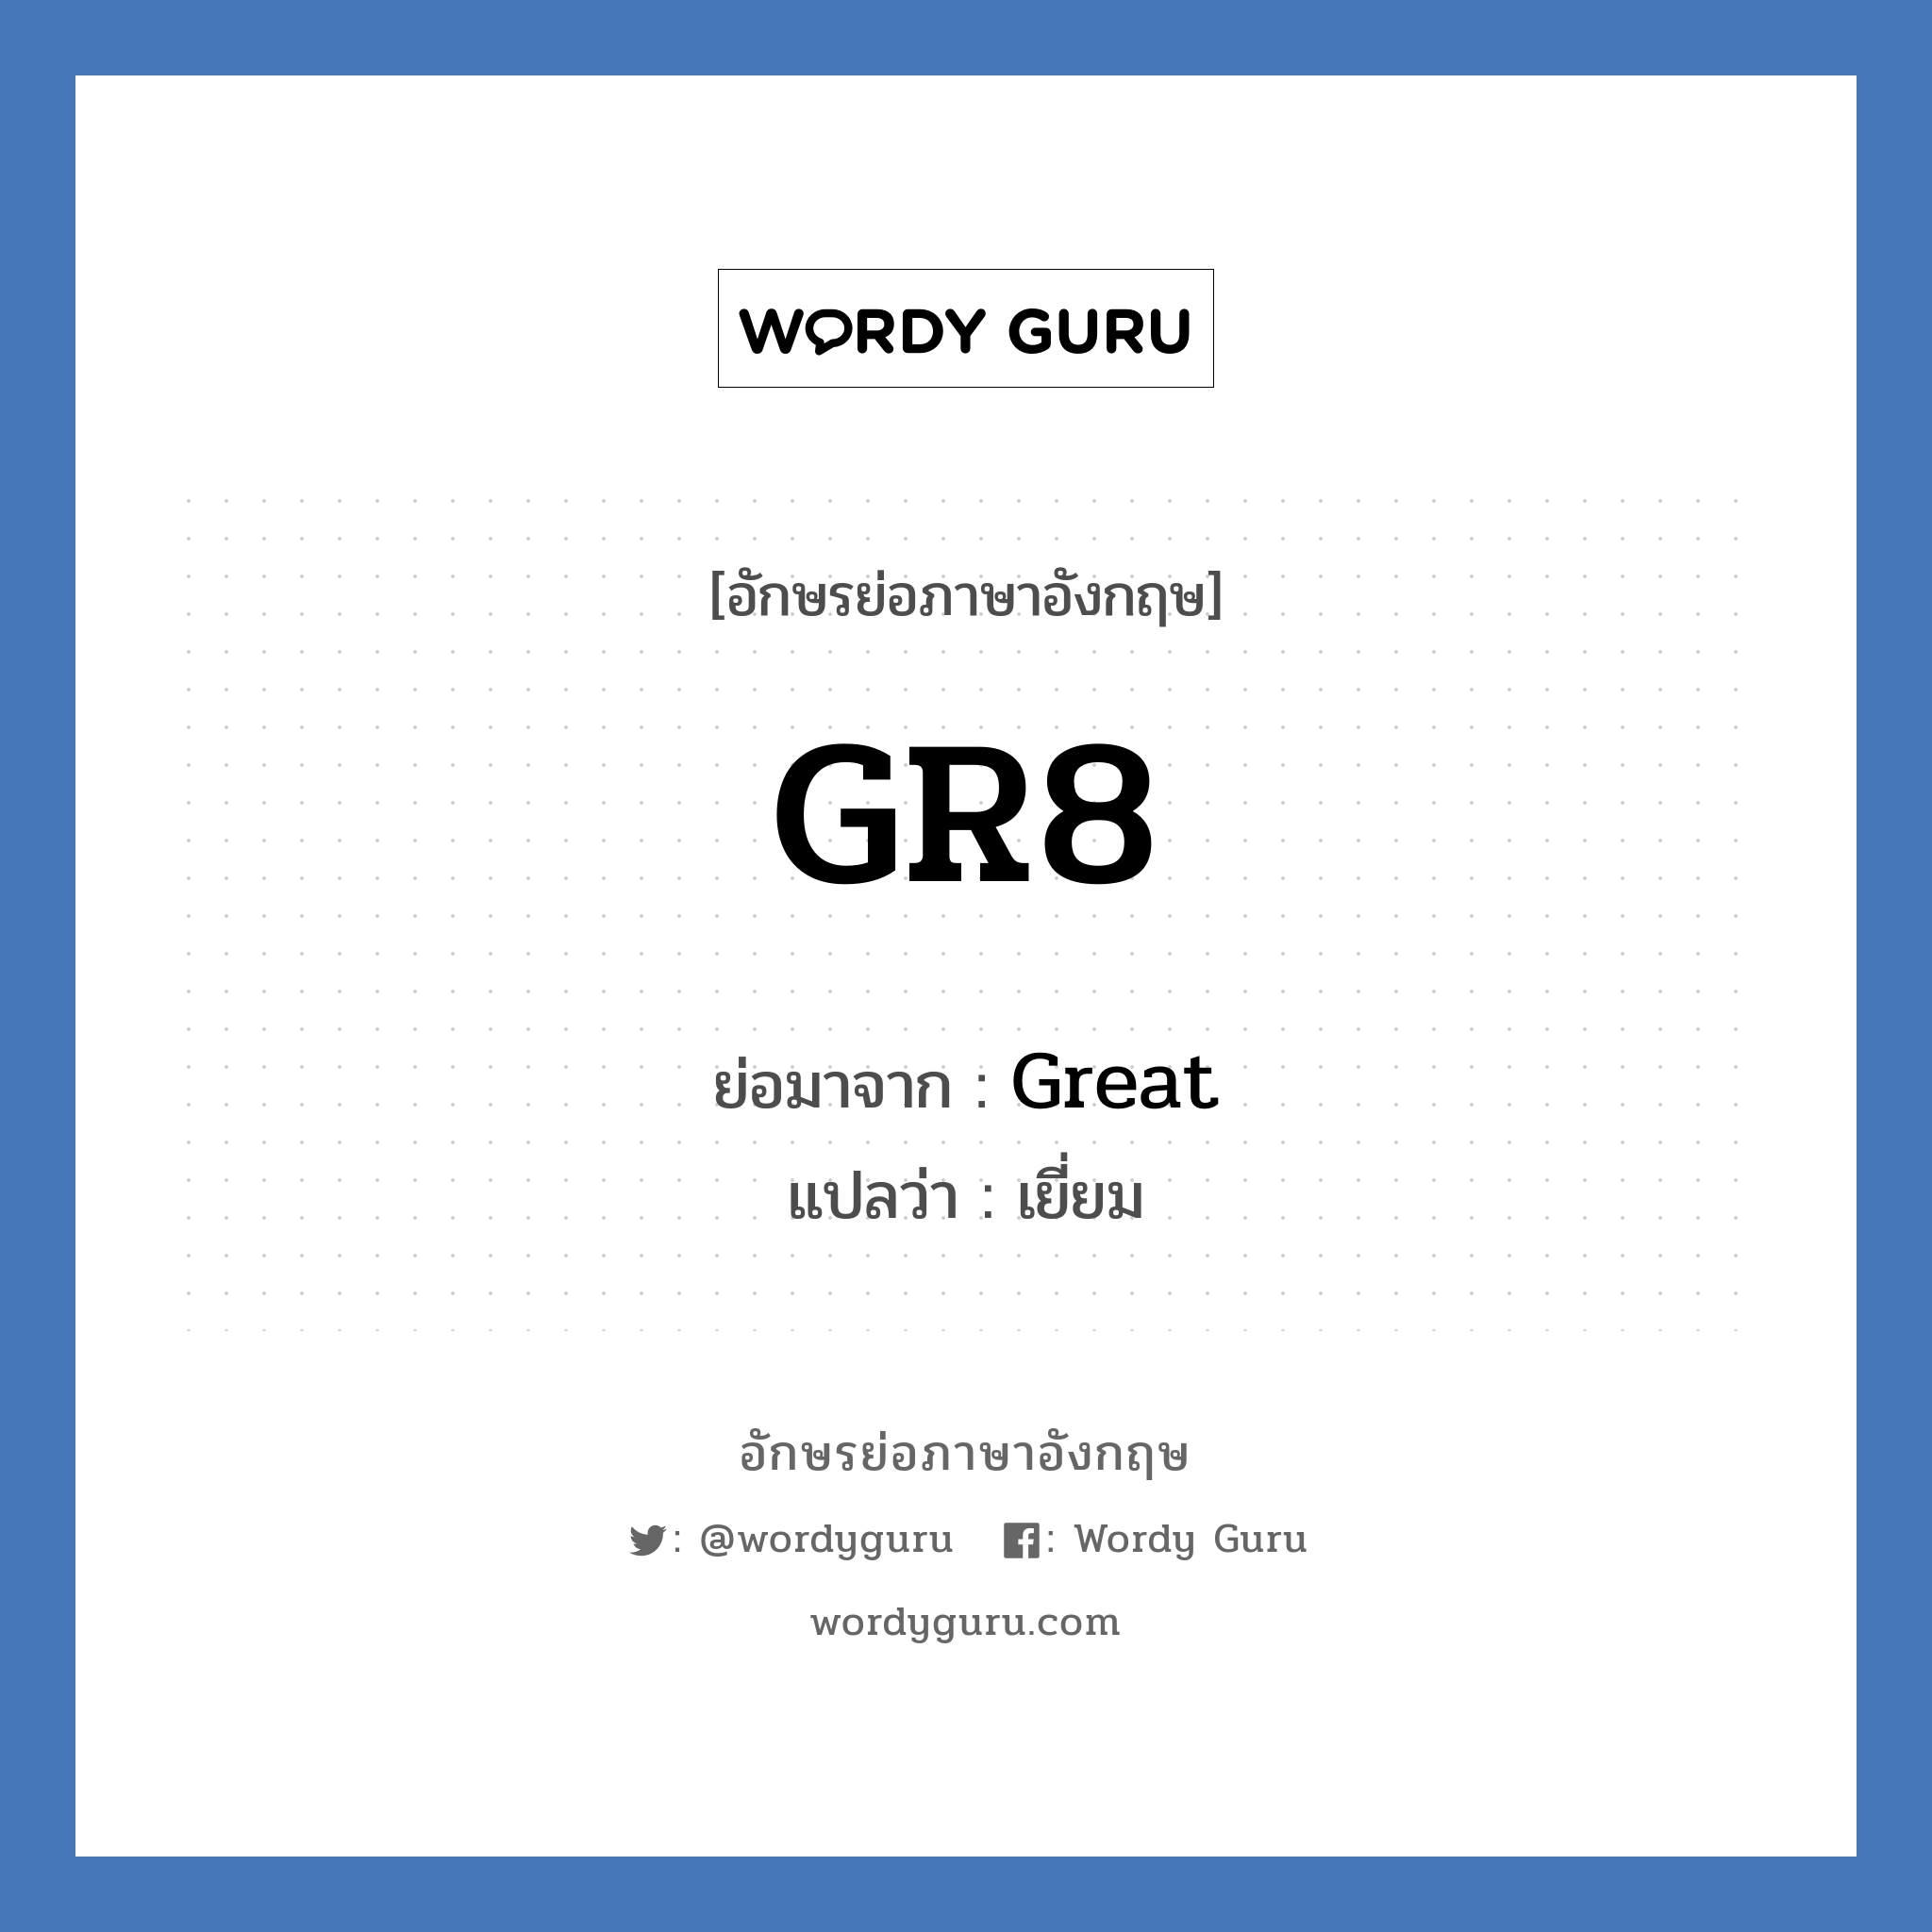 Great คำย่อคือ? แปลว่า?, อักษรย่อภาษาอังกฤษ Great ย่อมาจาก GR8 แปลว่า เยี่ยม